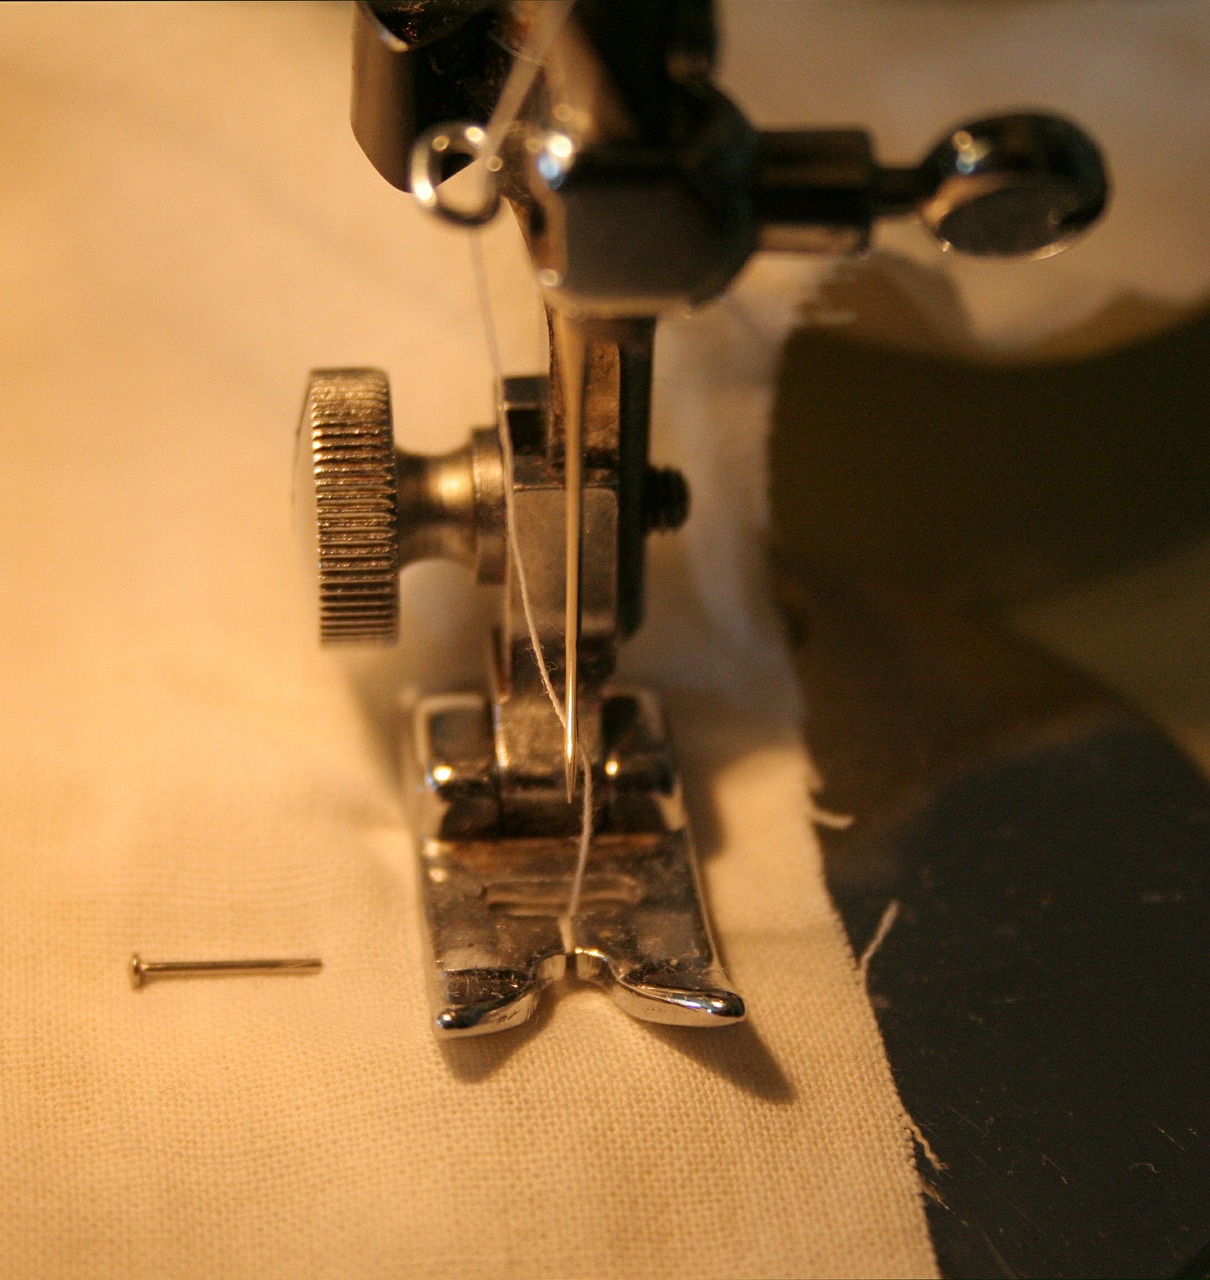 needle stitch sewing-machine free photo